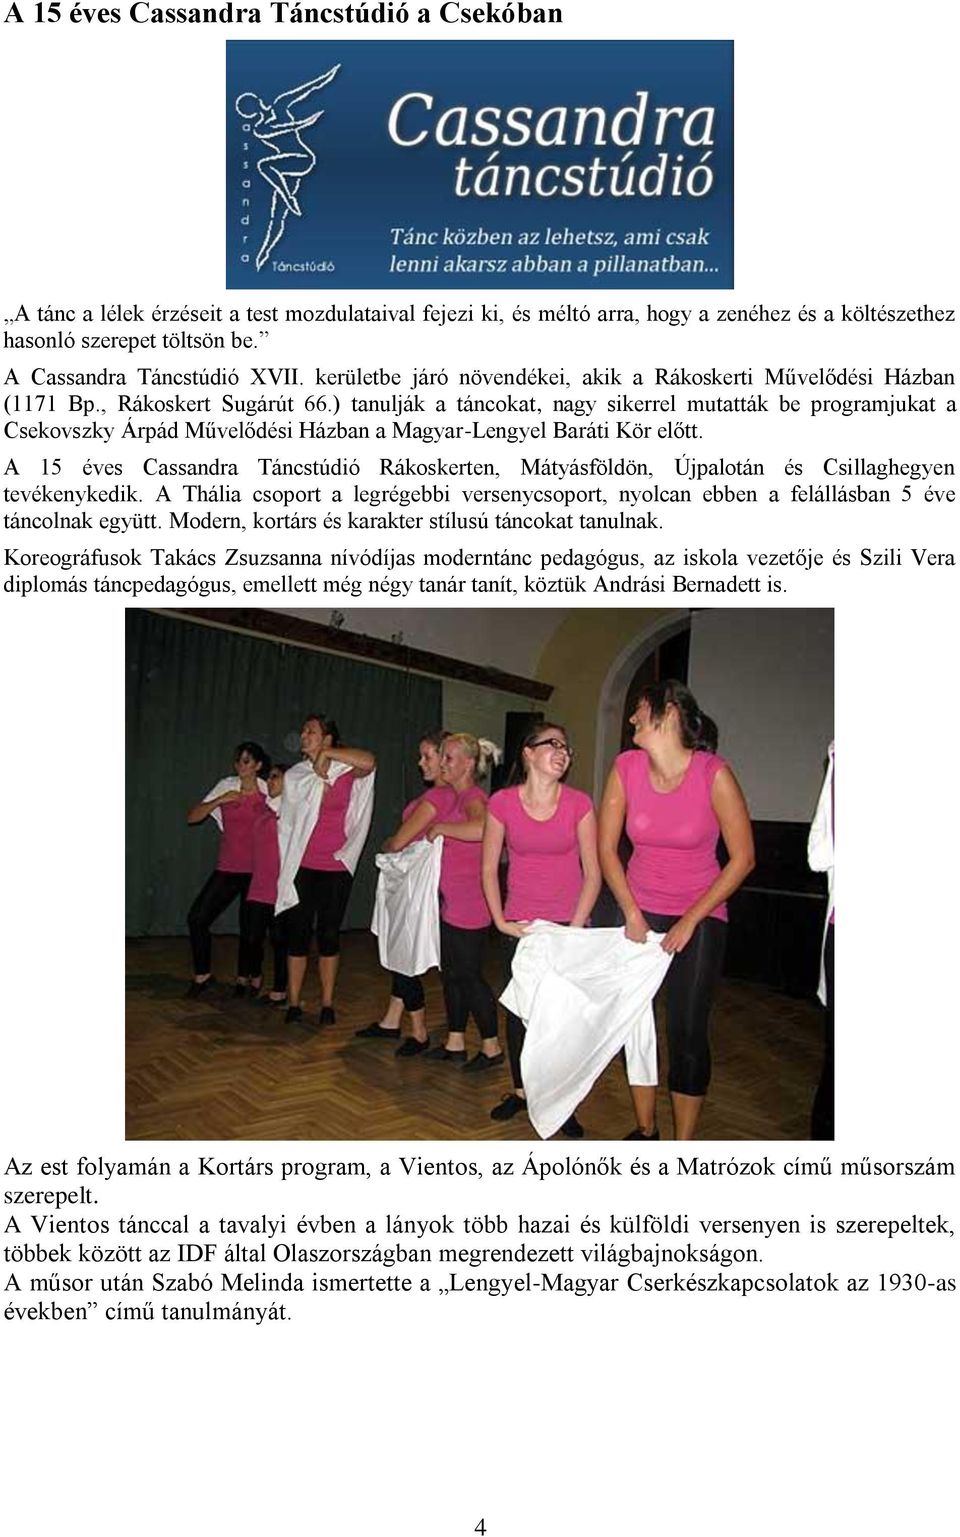 ) tanulják a táncokat, nagy sikerrel mutatták be programjukat a Csekovszky Árpád Művelődési Házban a Magyar-Lengyel Baráti Kör előtt.